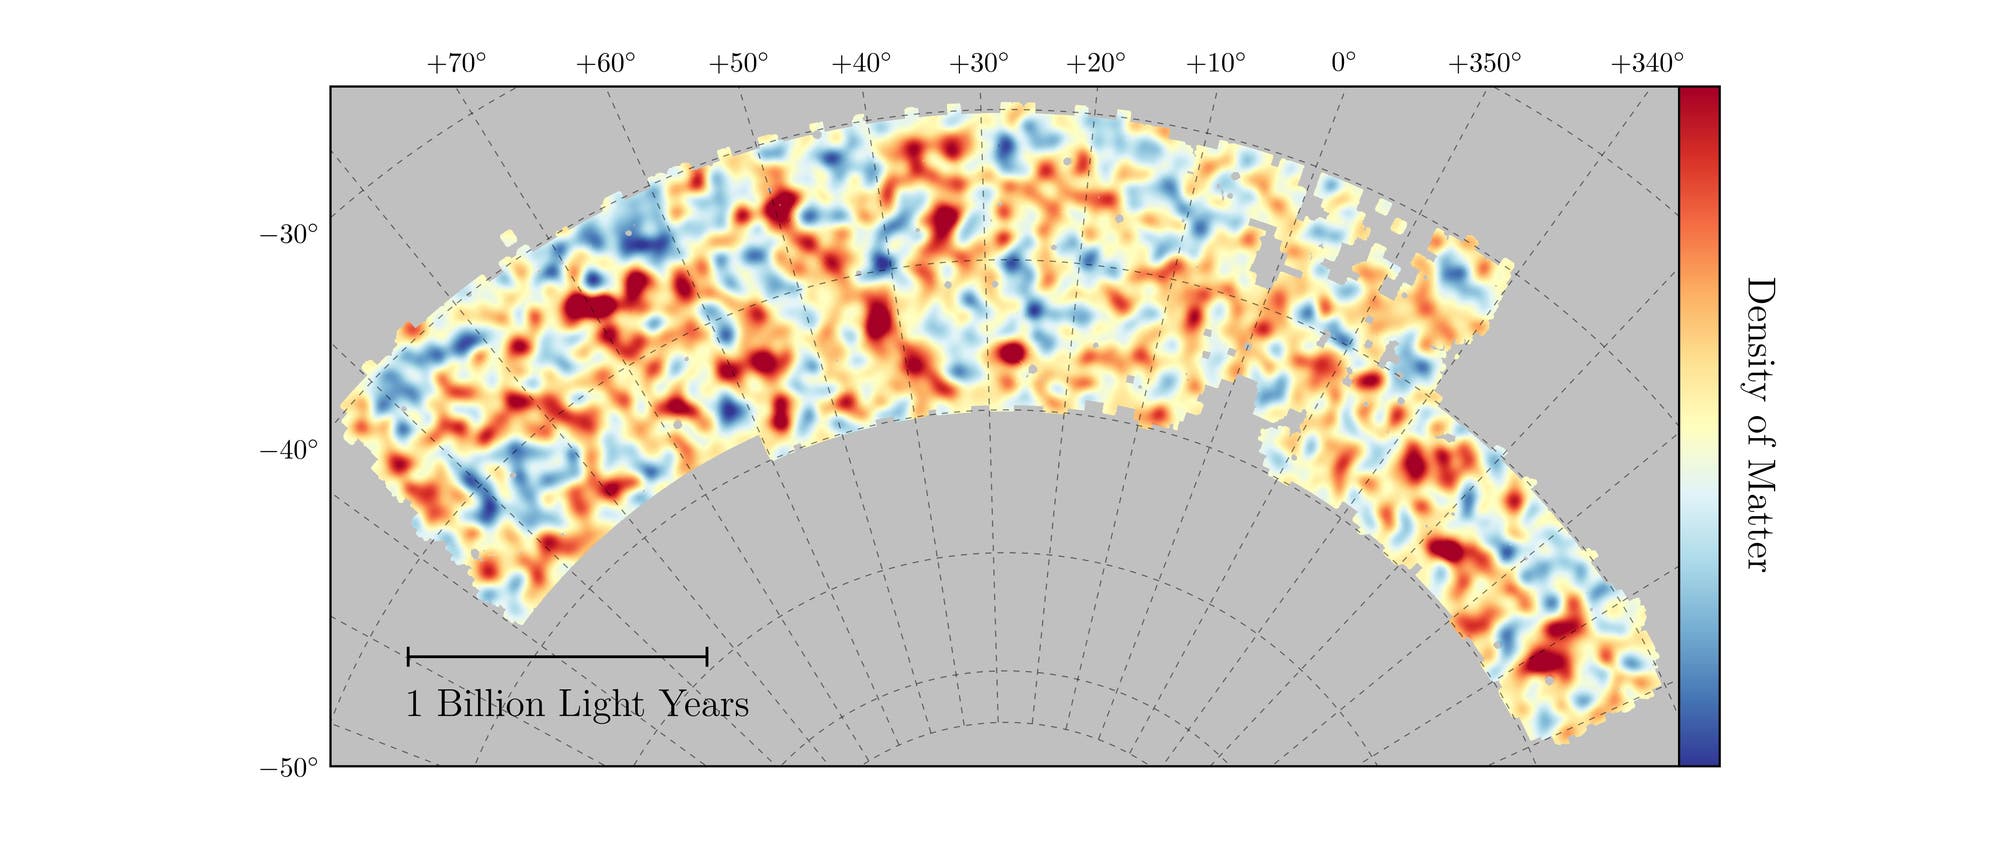 Der Dark Energy Survey (DES) hat in einem großen Abschnitt des südlichen Sternenhimmels bestimmt, wie stark sich die Materie in gewissen Regionen sammelt. Die Messungen liefern Hinweise auf das Wechselspiel von Dunkler Materie und Dunkler Energie: Letztere treibt Galaxien auf großen Skalen auseinander, während Dunkle Materie anziehend wirkt und so lokale Anhäufungen verstärkt.